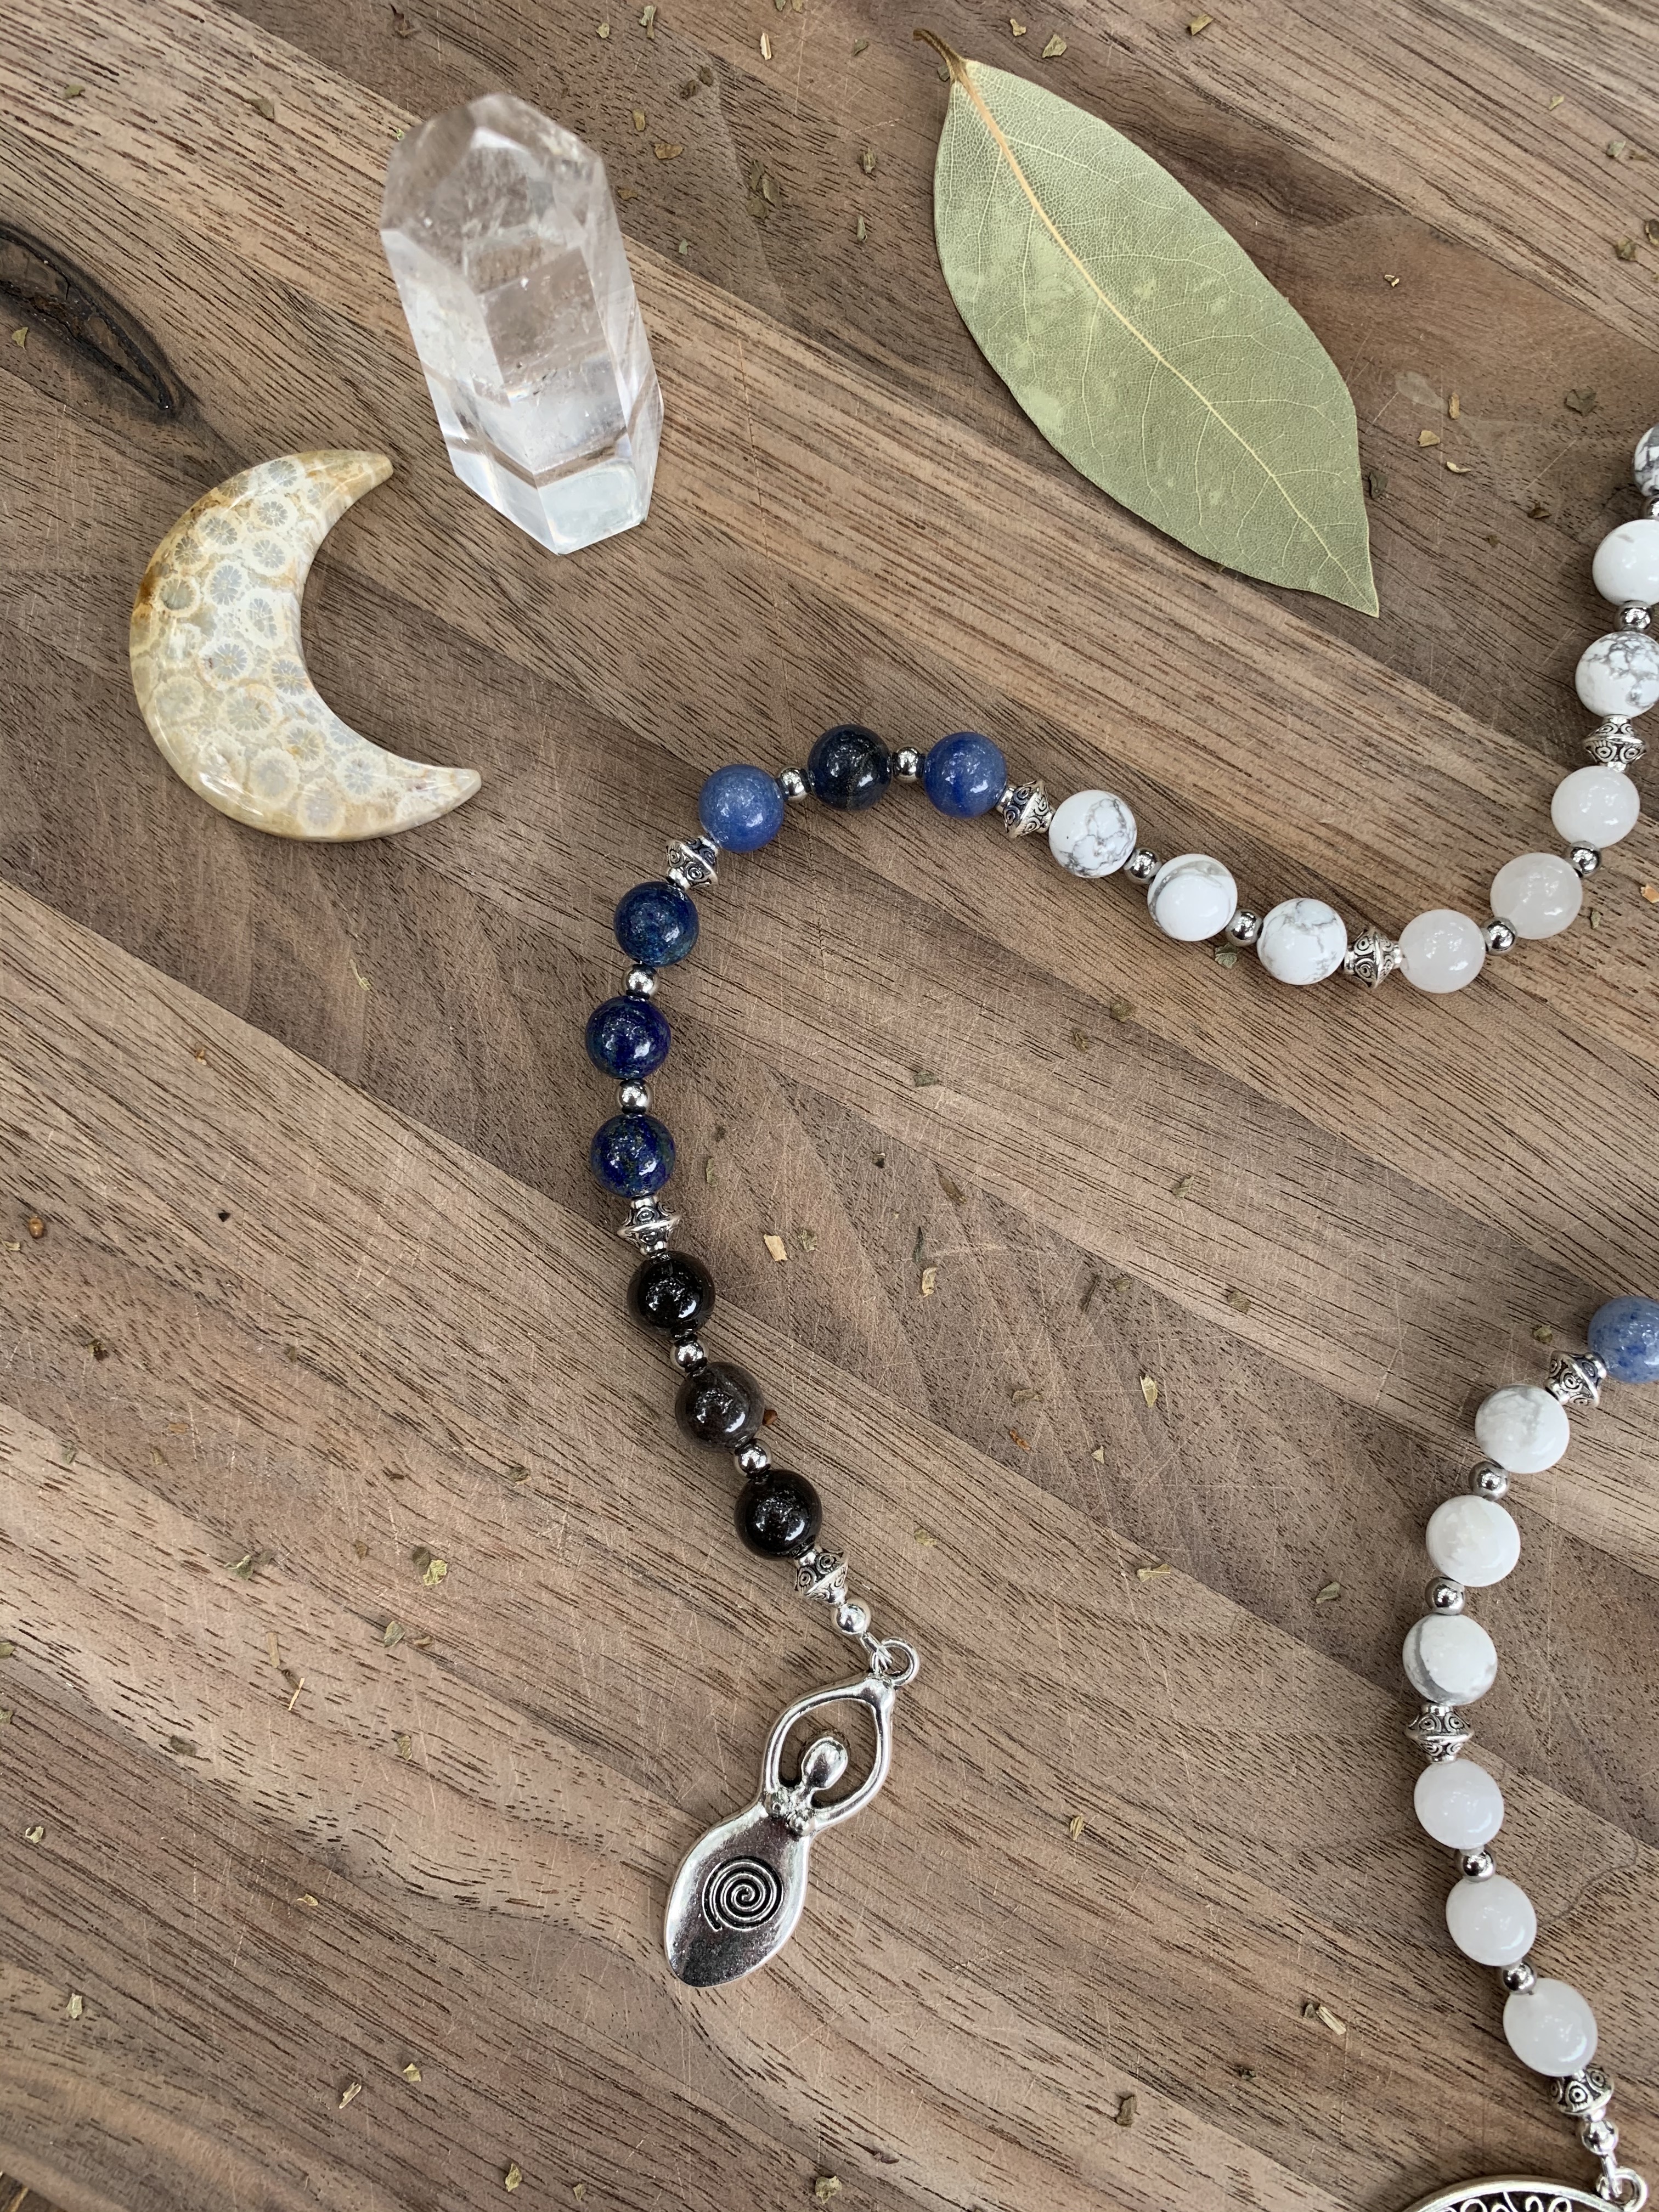 How to Use Pagan Prayer Beads